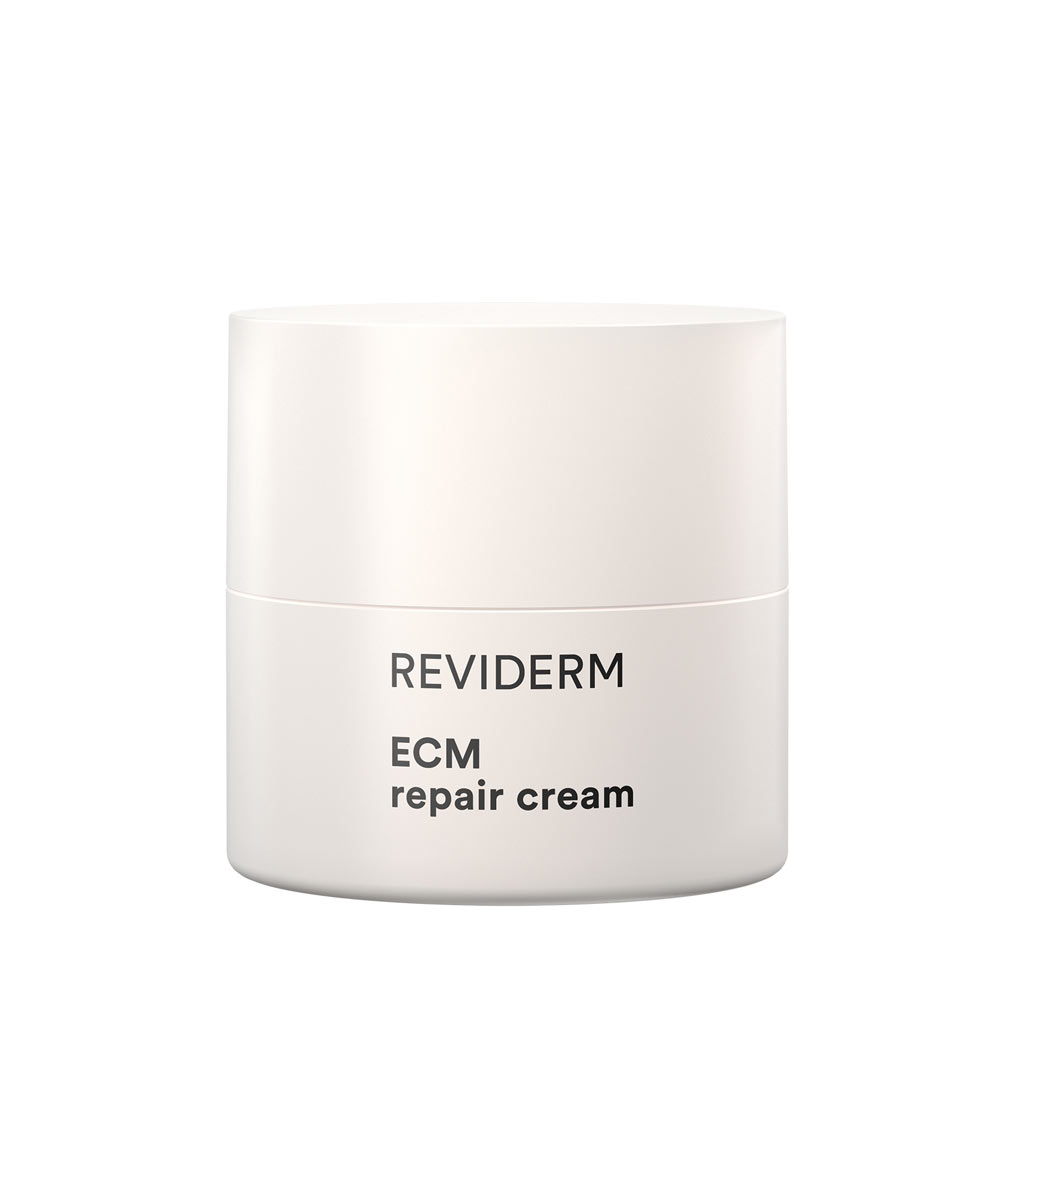 ECM repair cream